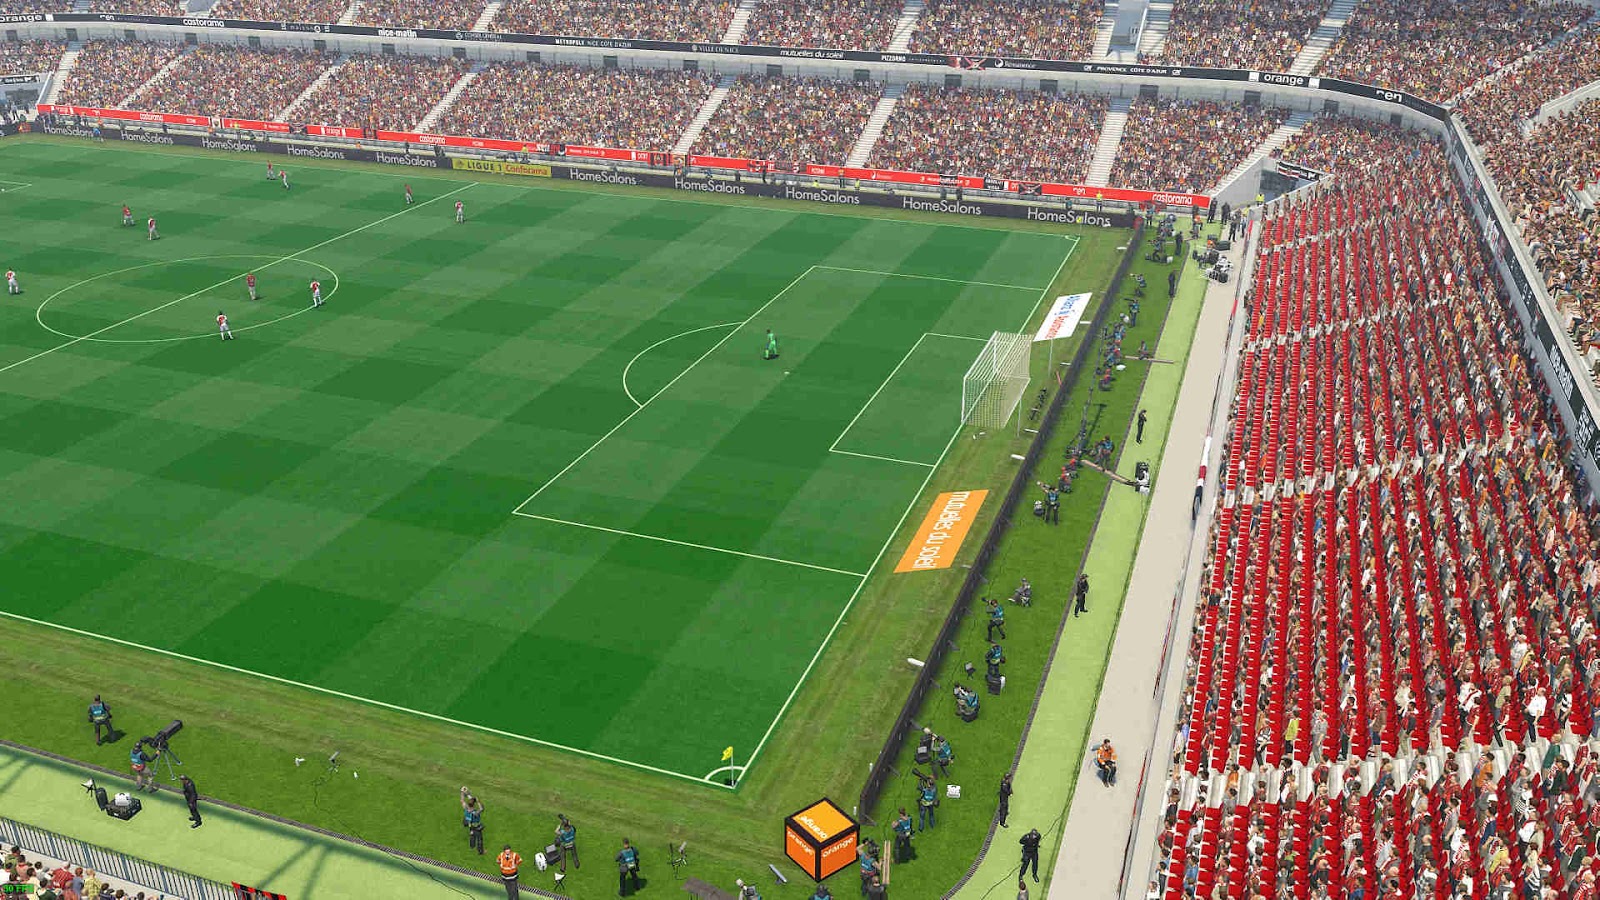 PES 2019 Stadium Update Matmut Atlantique & Allianz